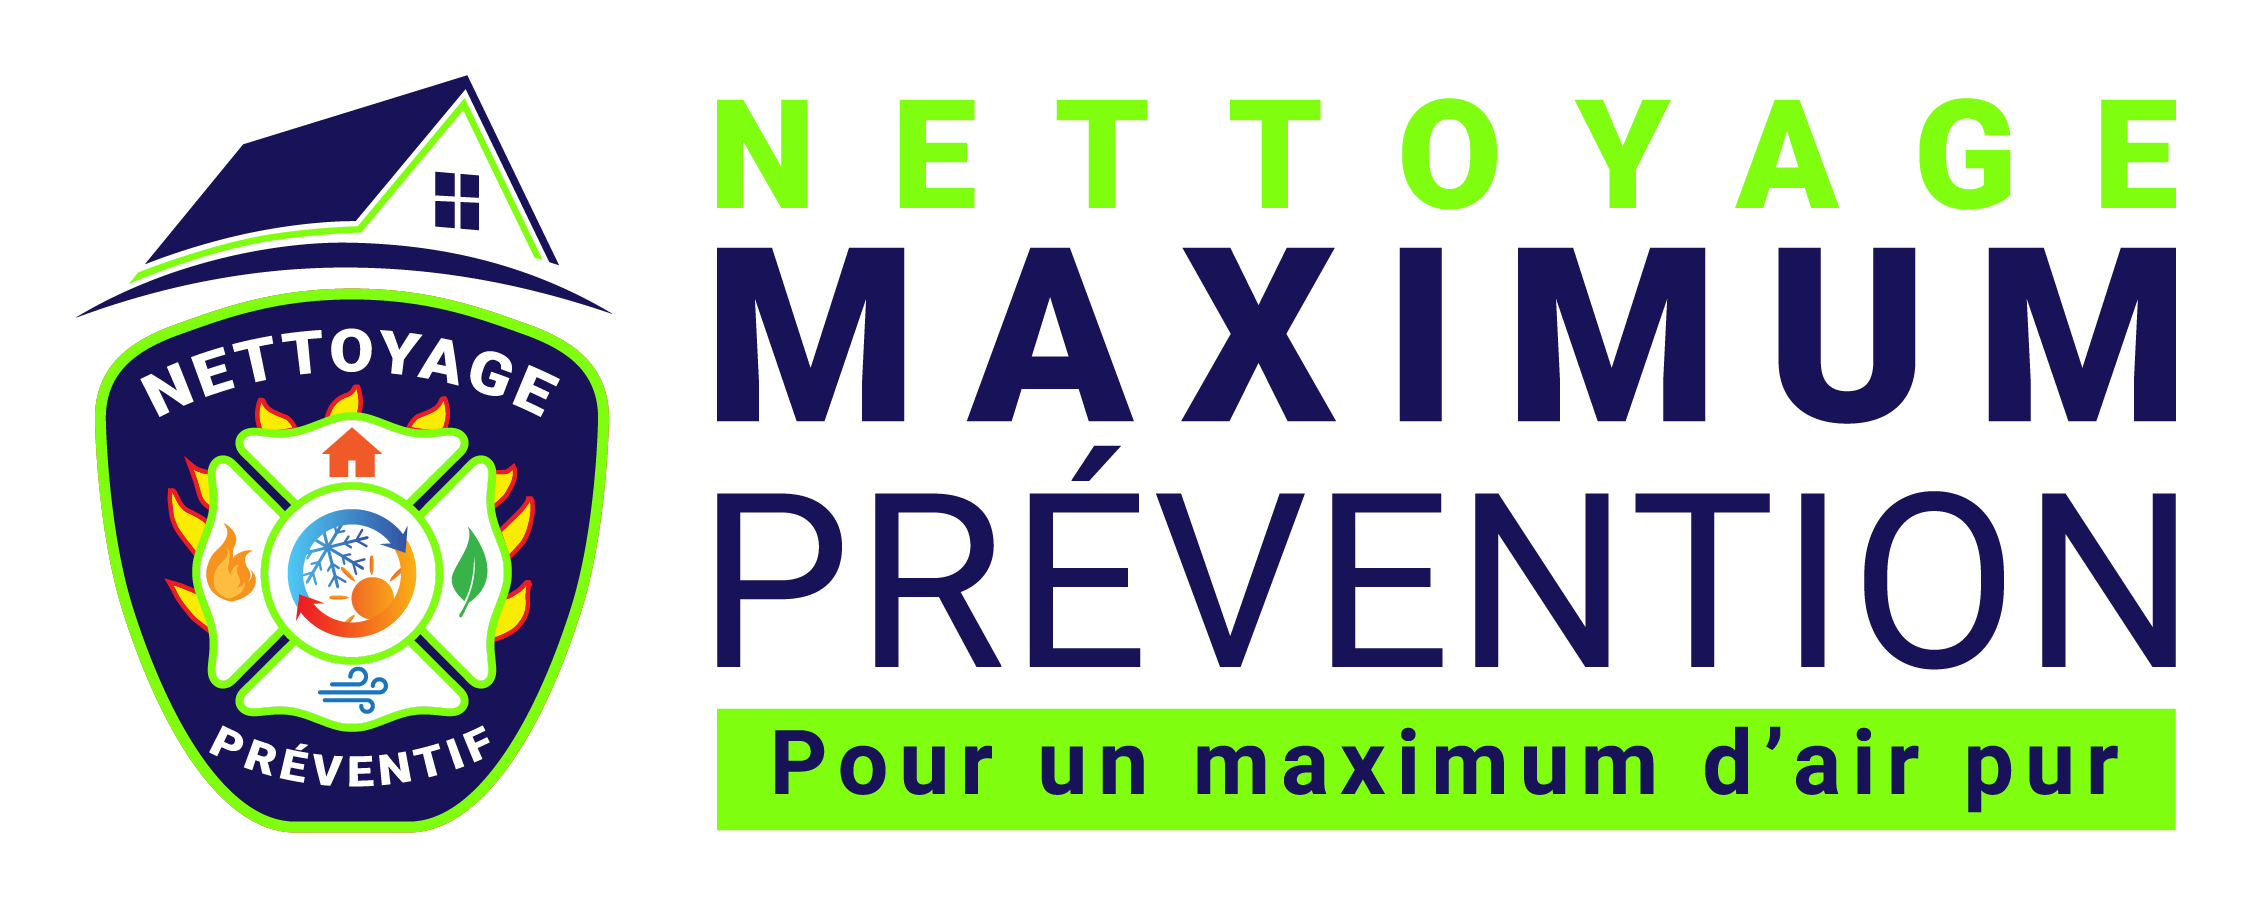 Nettoyage Maximum Prévention